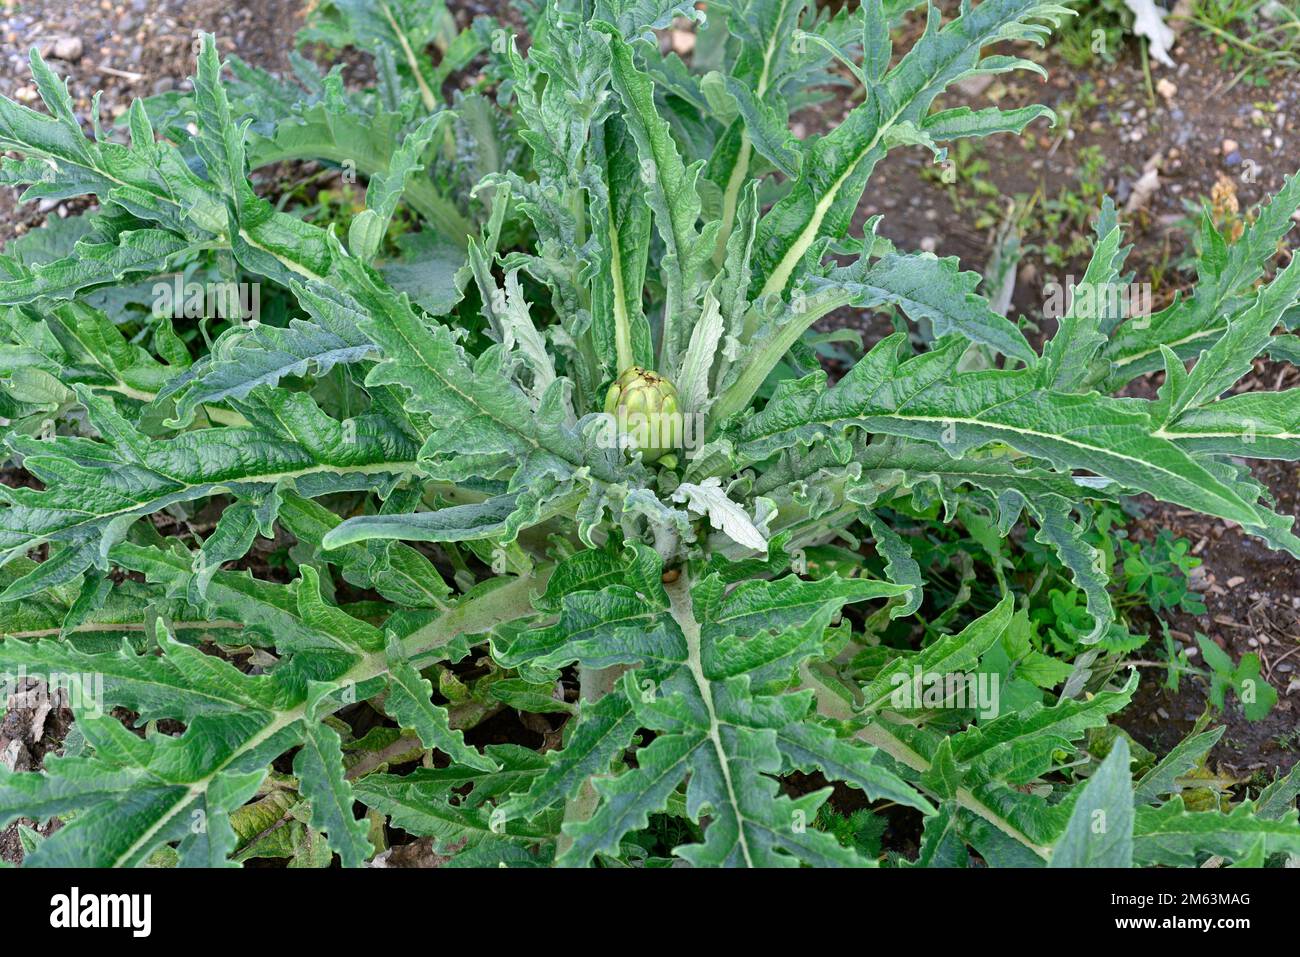 La alcachofa del globo (Cynara scolymus o Cynara cardunculus scolymus) es una planta perenne cultivada para nuestros cogollos de flores comestibles. Esta foto fue tomada Foto de stock